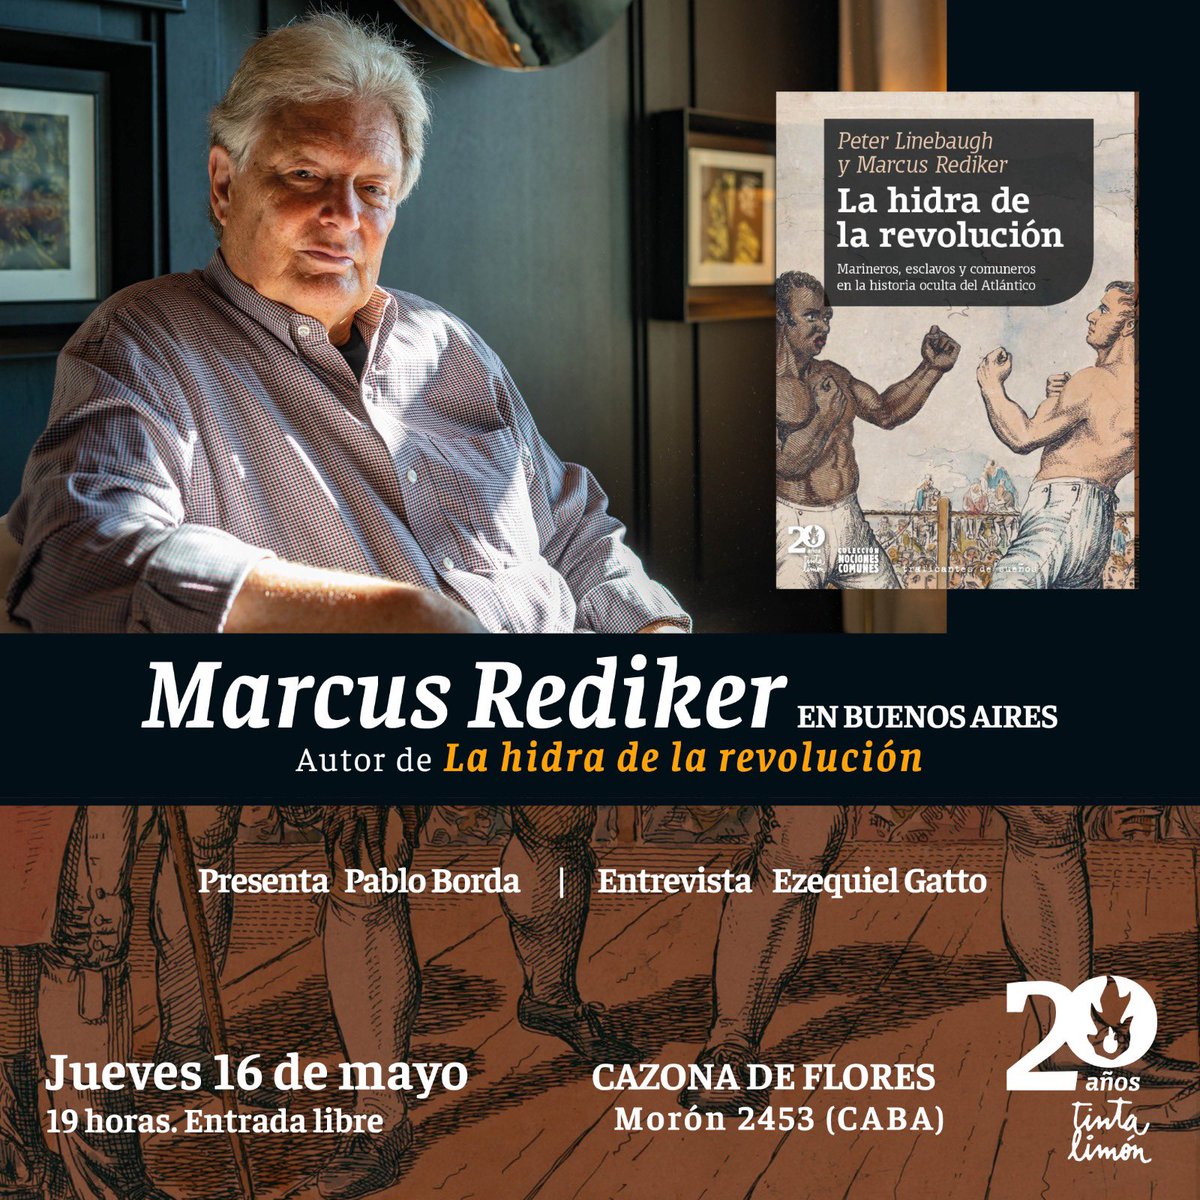 🔥 Marcus Rediker en Buenos Aires El autor de 'La hidra de la revolución' dará una charla gratuita en CaZona de Flores. 📍 Jueves 16 de mayo 19 Hs. Morón 2453 (CABA) ✔️ Presenta: @elprofeborda ✔️ Entrevista: @posutopico +sobre el libro: shorturl.at/cegi1